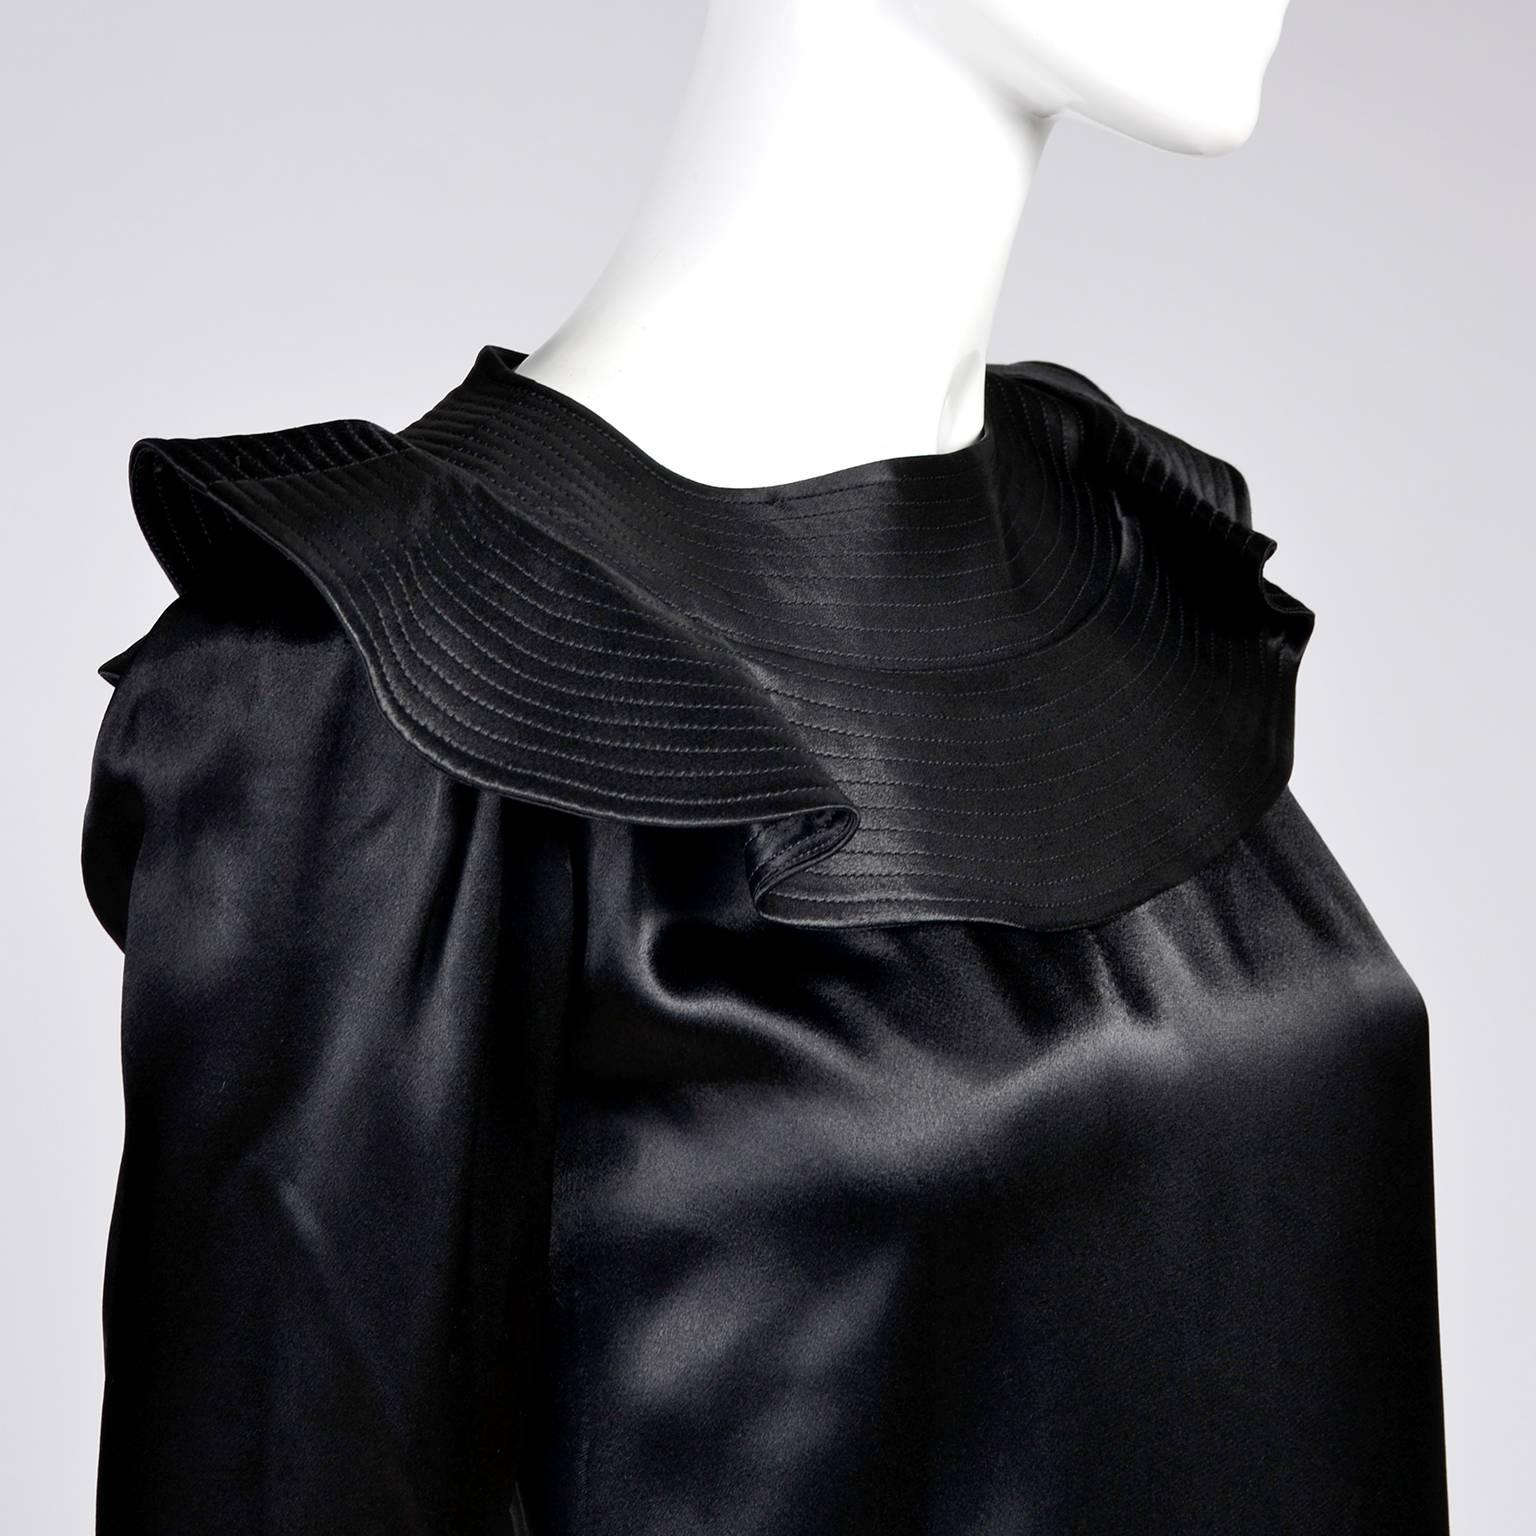 Cette magnifique robe vintage a été conçue par Albert Nipon dans les années 1970. La robe est en satin noir avec un col à volants qui présente des rangées de surpiqûres. Cette robe est tellement belle qu'elle n'est pas aussi belle sur les photos